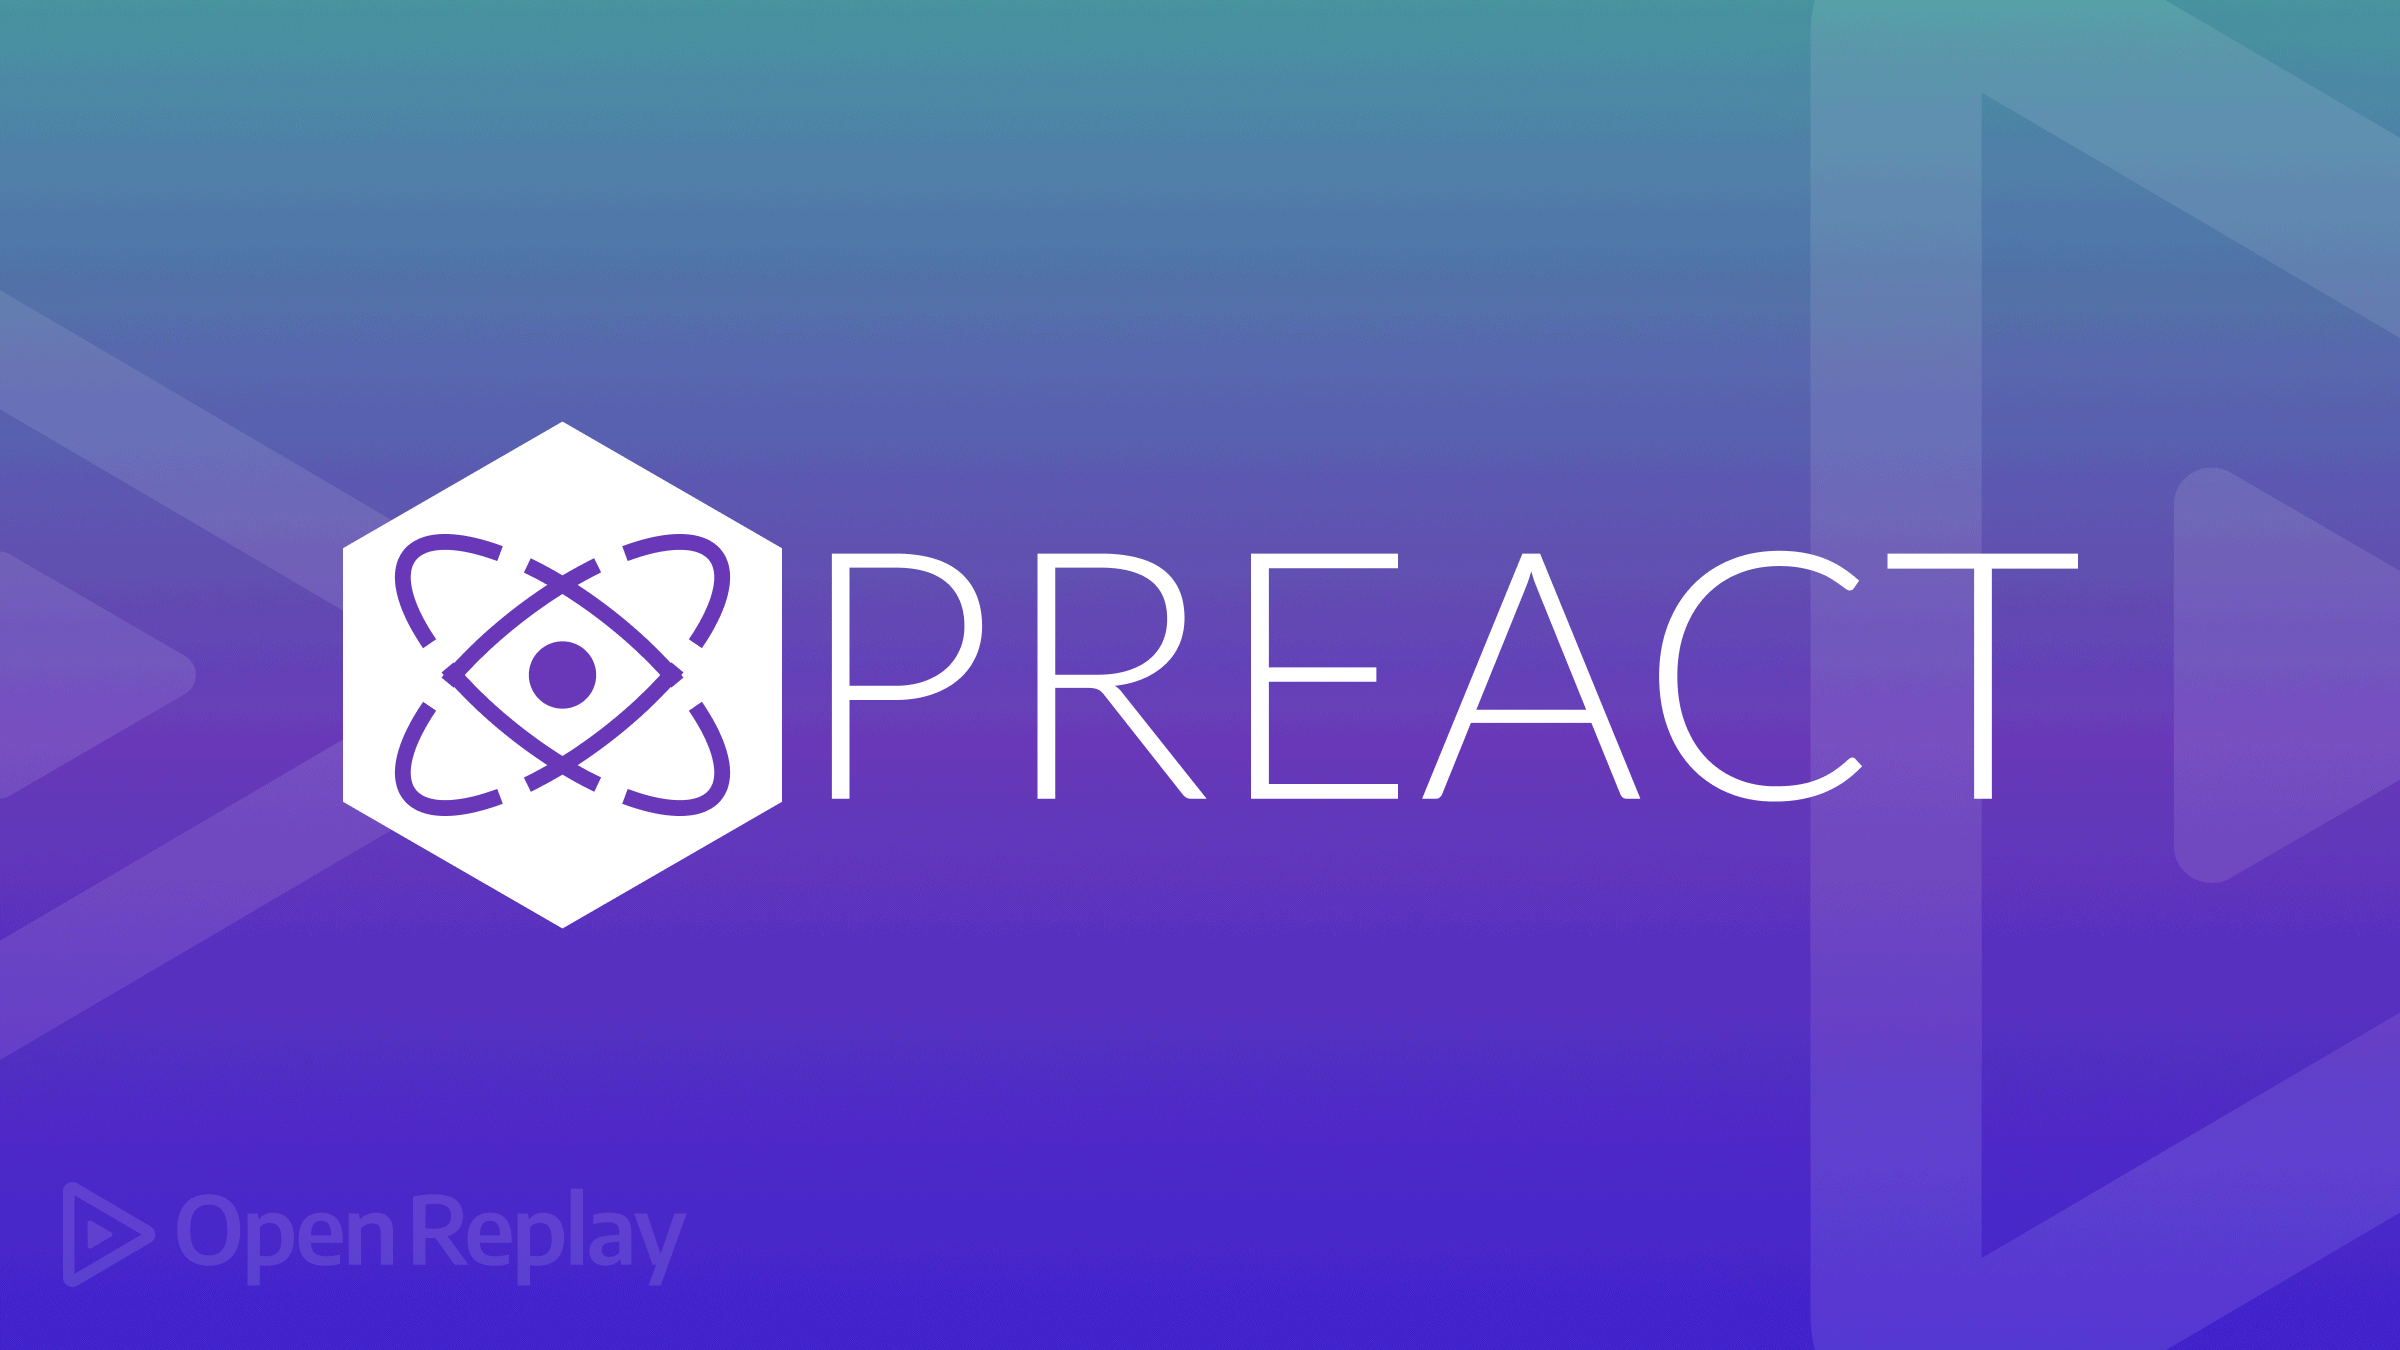 Alternatives to React: Preact